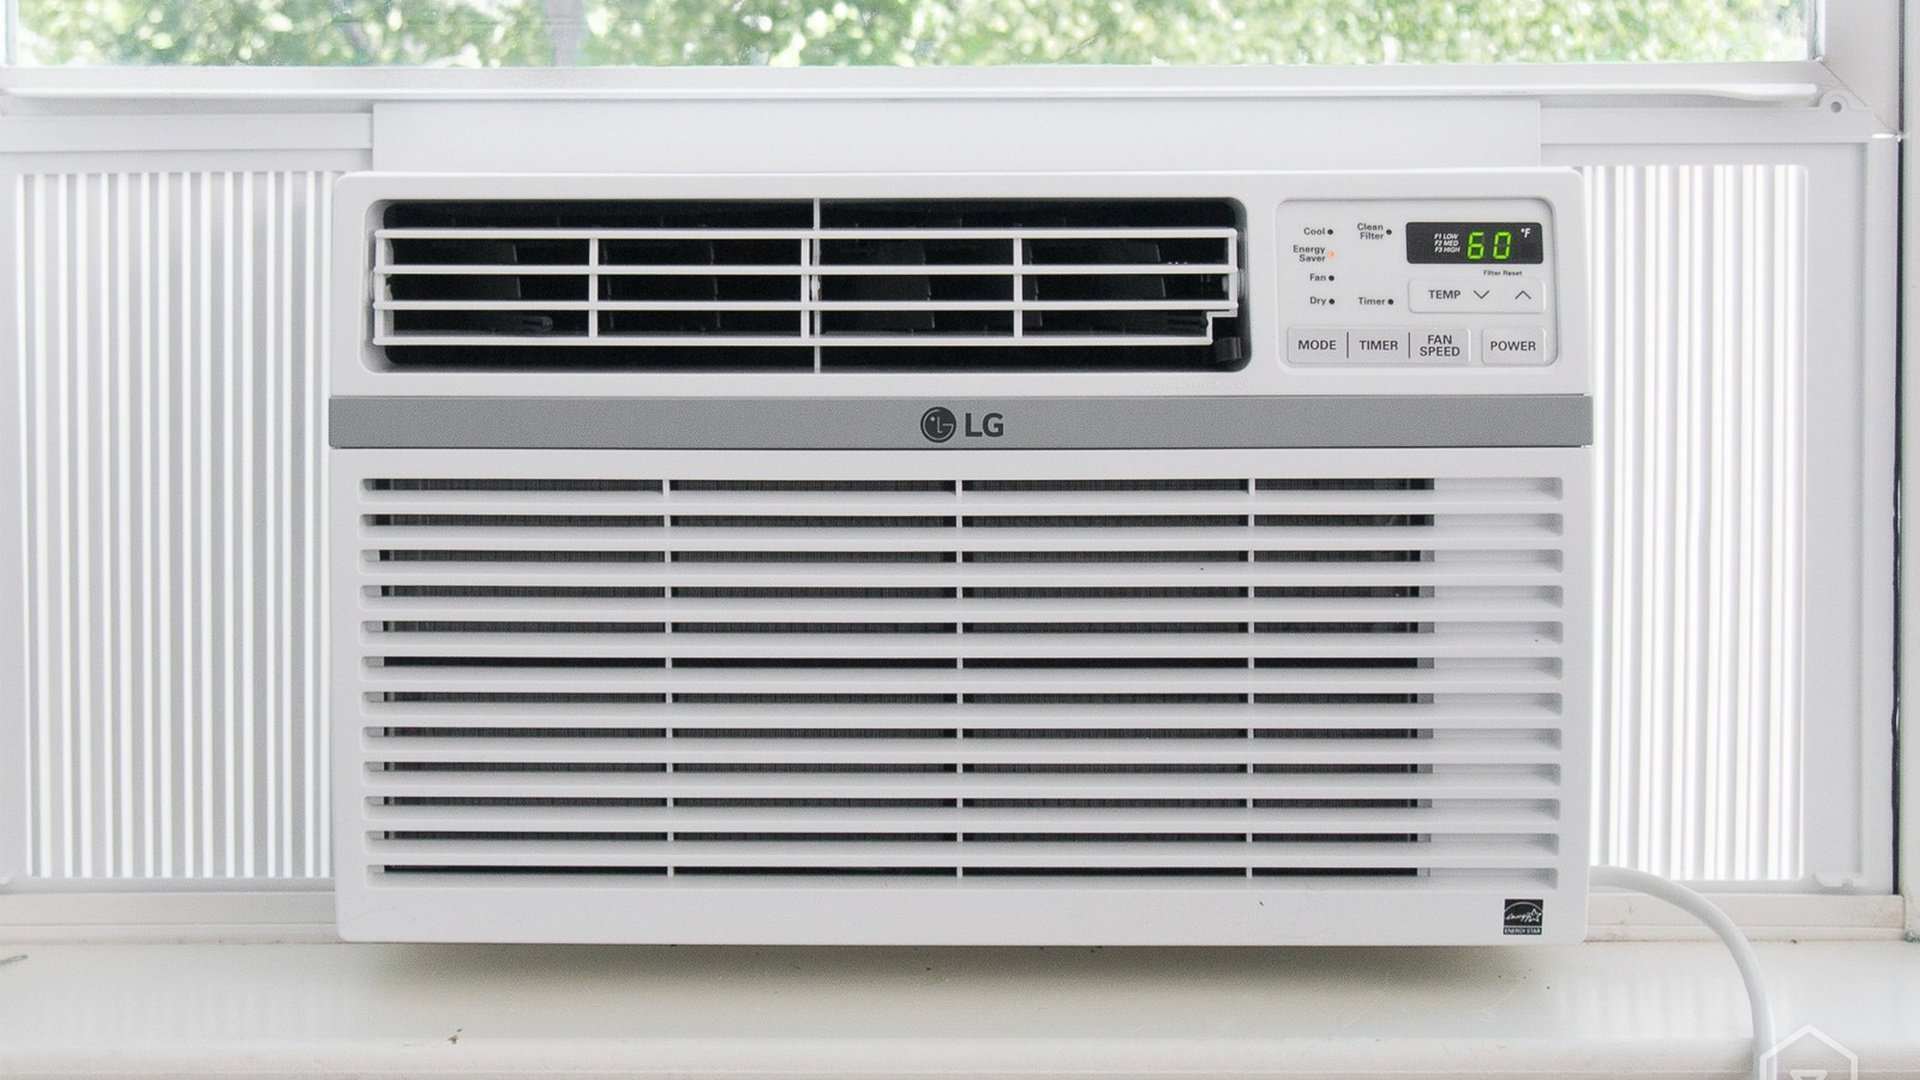 03 Un aire acondicionado modelo de ventana marca LG de color blanco